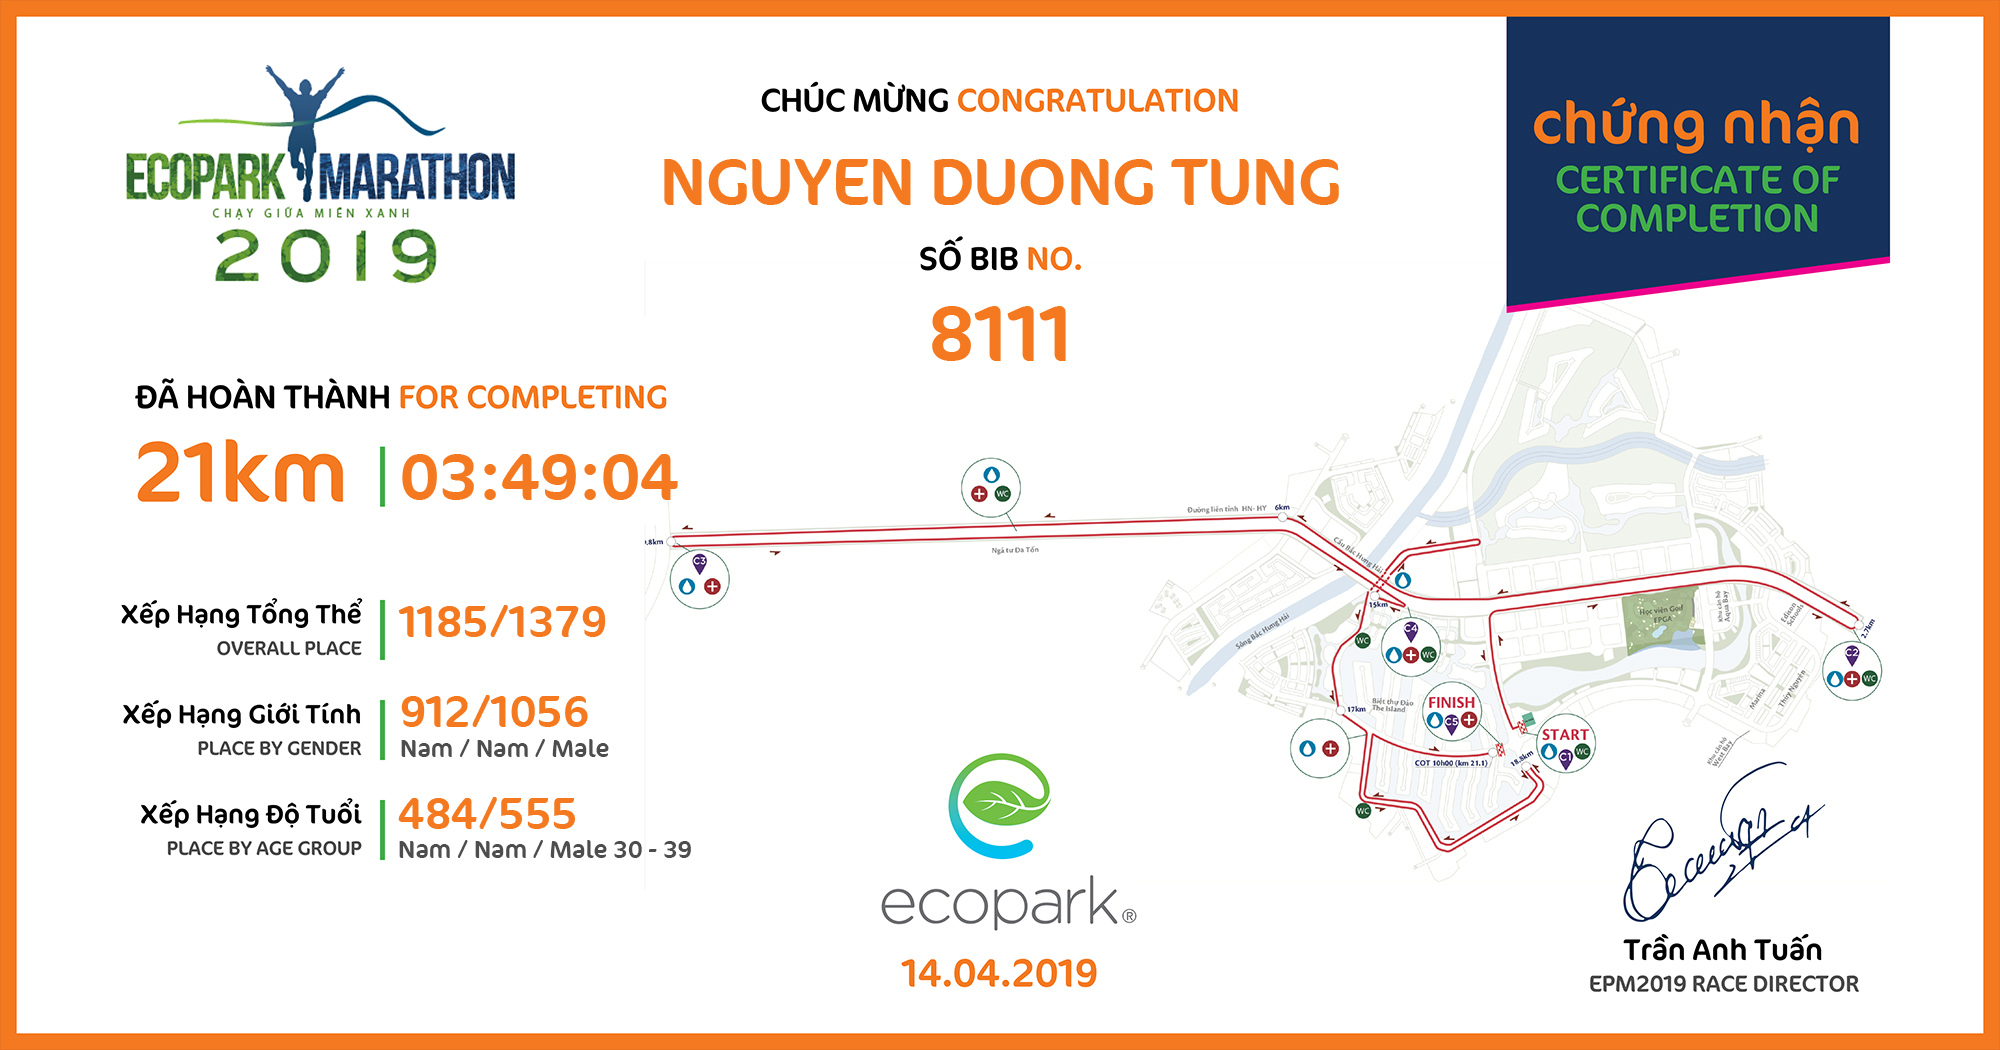 8111 - Nguyen Duong Tung